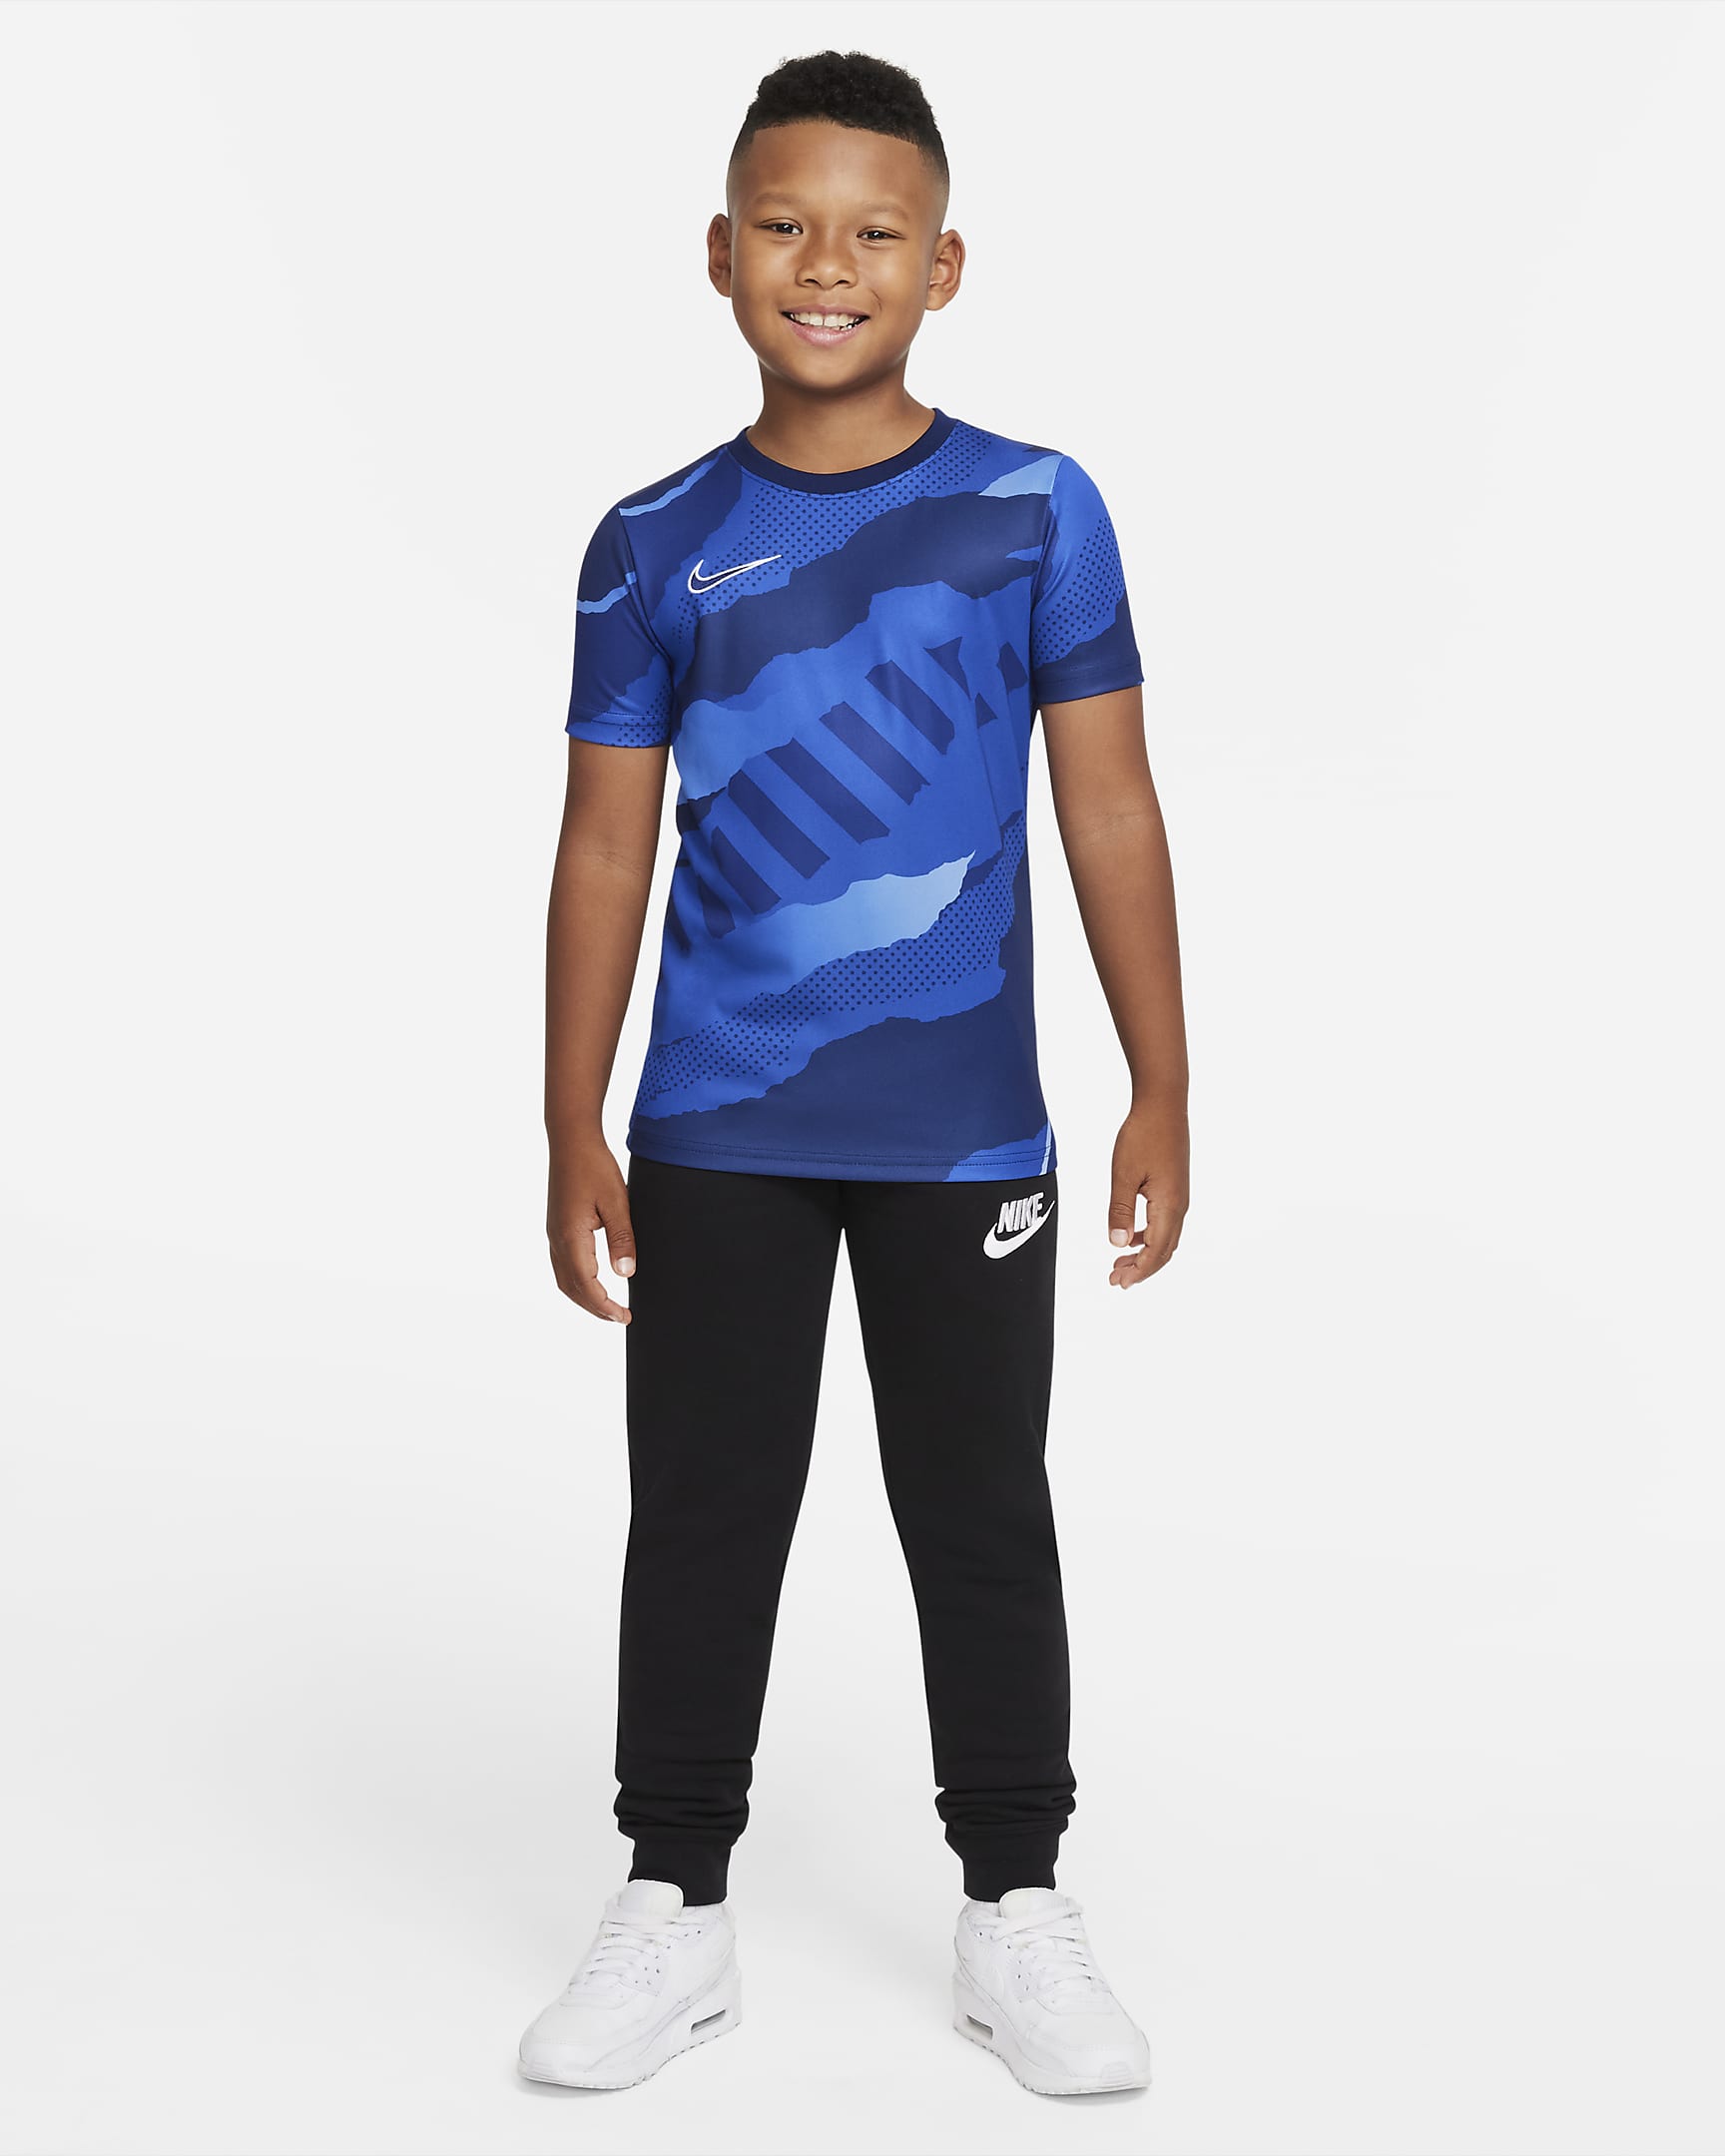 Nike Older Kids' Short-Sleeve Football Top. Nike PH